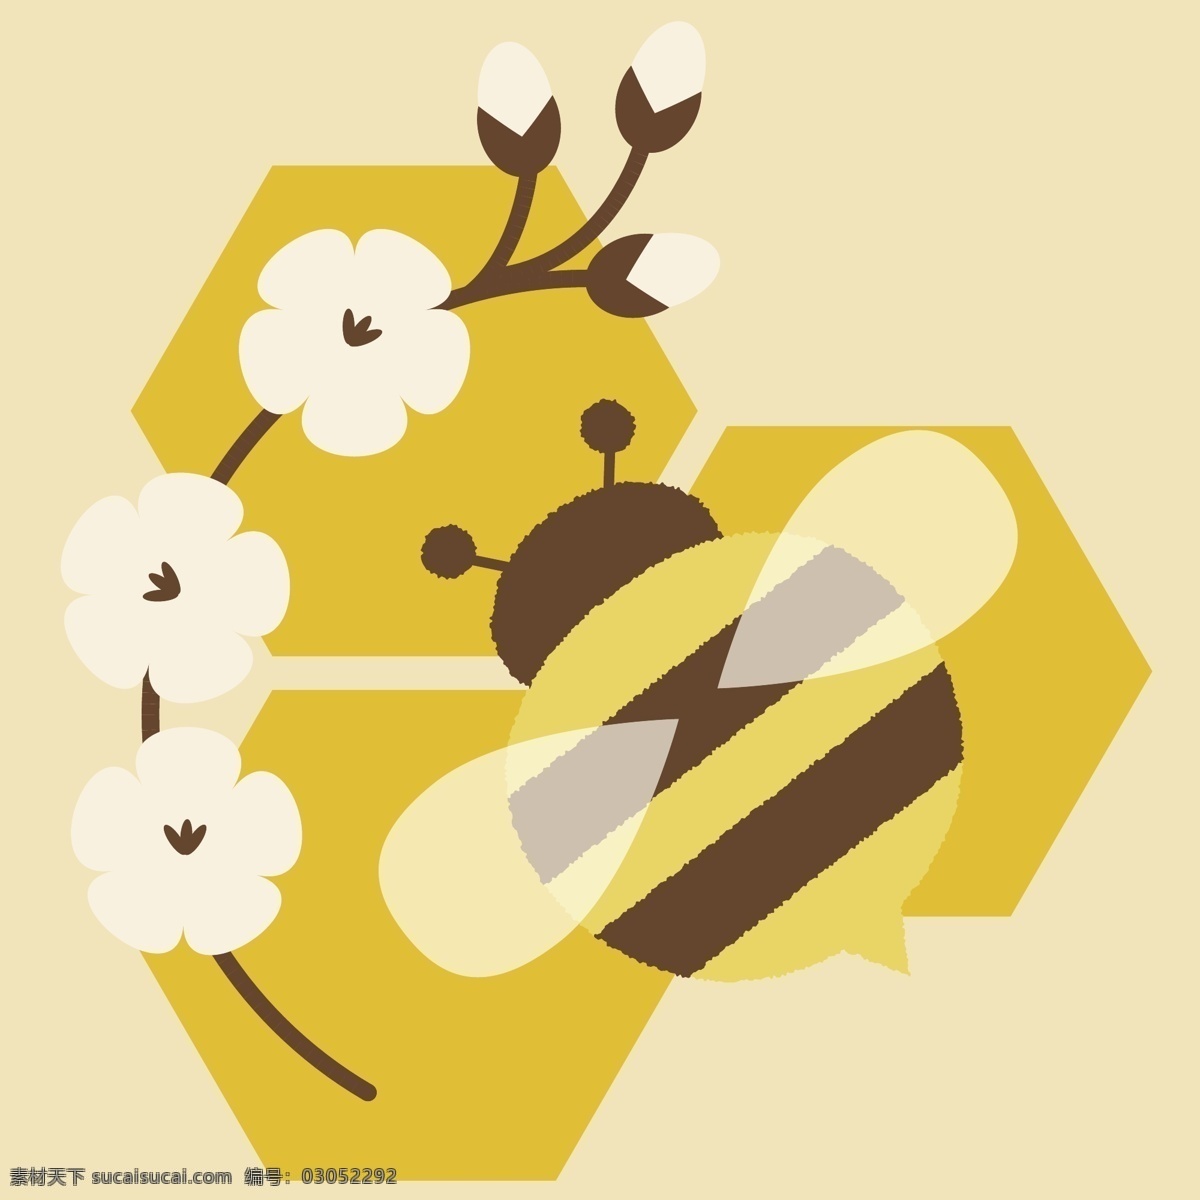 可爱 卡通 插画 小 蜜蜂 黄色 卡通小蜜蜂 插画蜜蜂 蜜蜂场景 动画素材 蜜蜂矢量 蜜蜂素材 蜜蜂采蜜 蜜蜂卡通 勤劳小蜜蜂